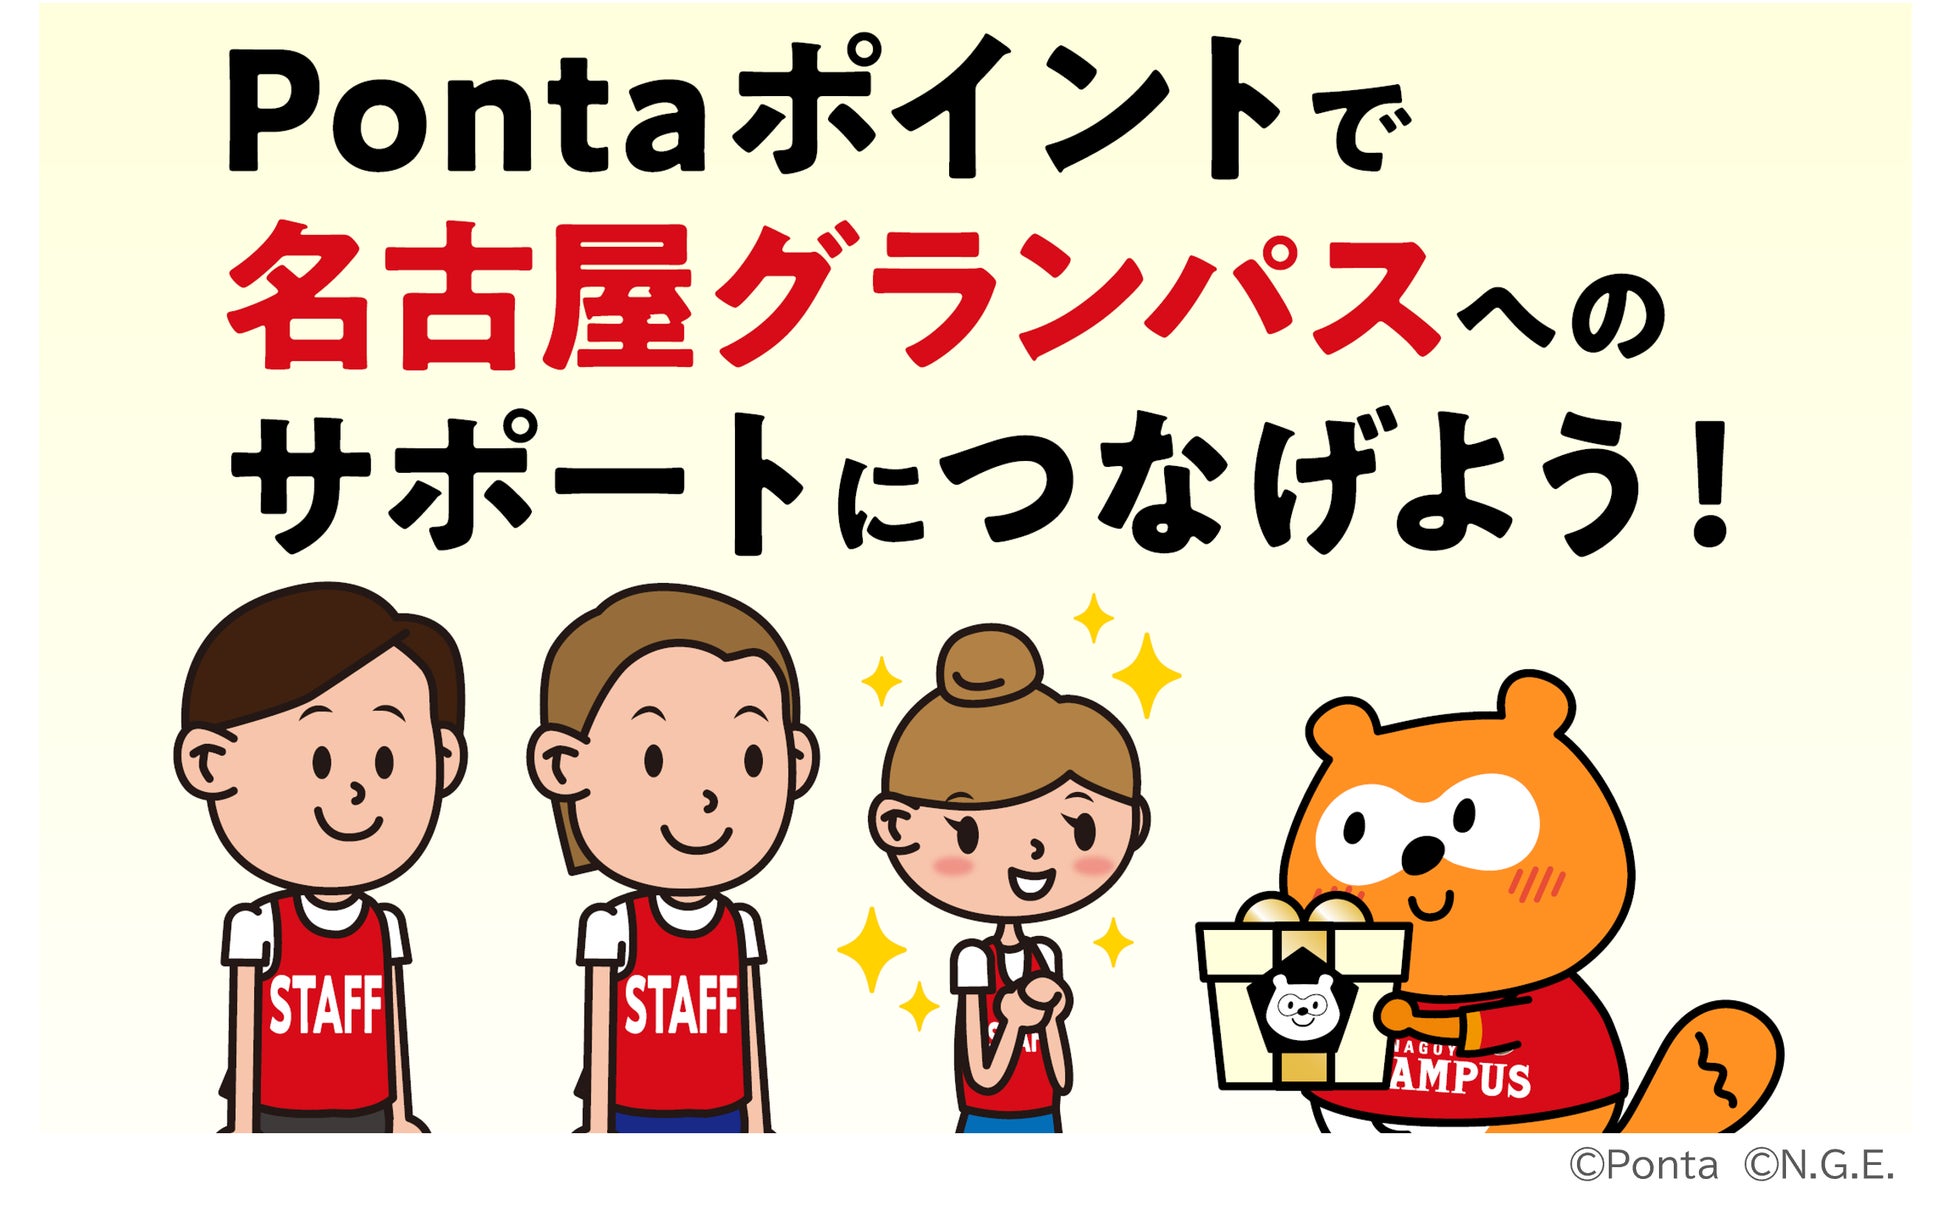 名古屋グランパスの夏の試合を応援しよう！ 参加者が増えるほど、スタッフの皆様をサポートするグッズが増えるキャンペーン開催